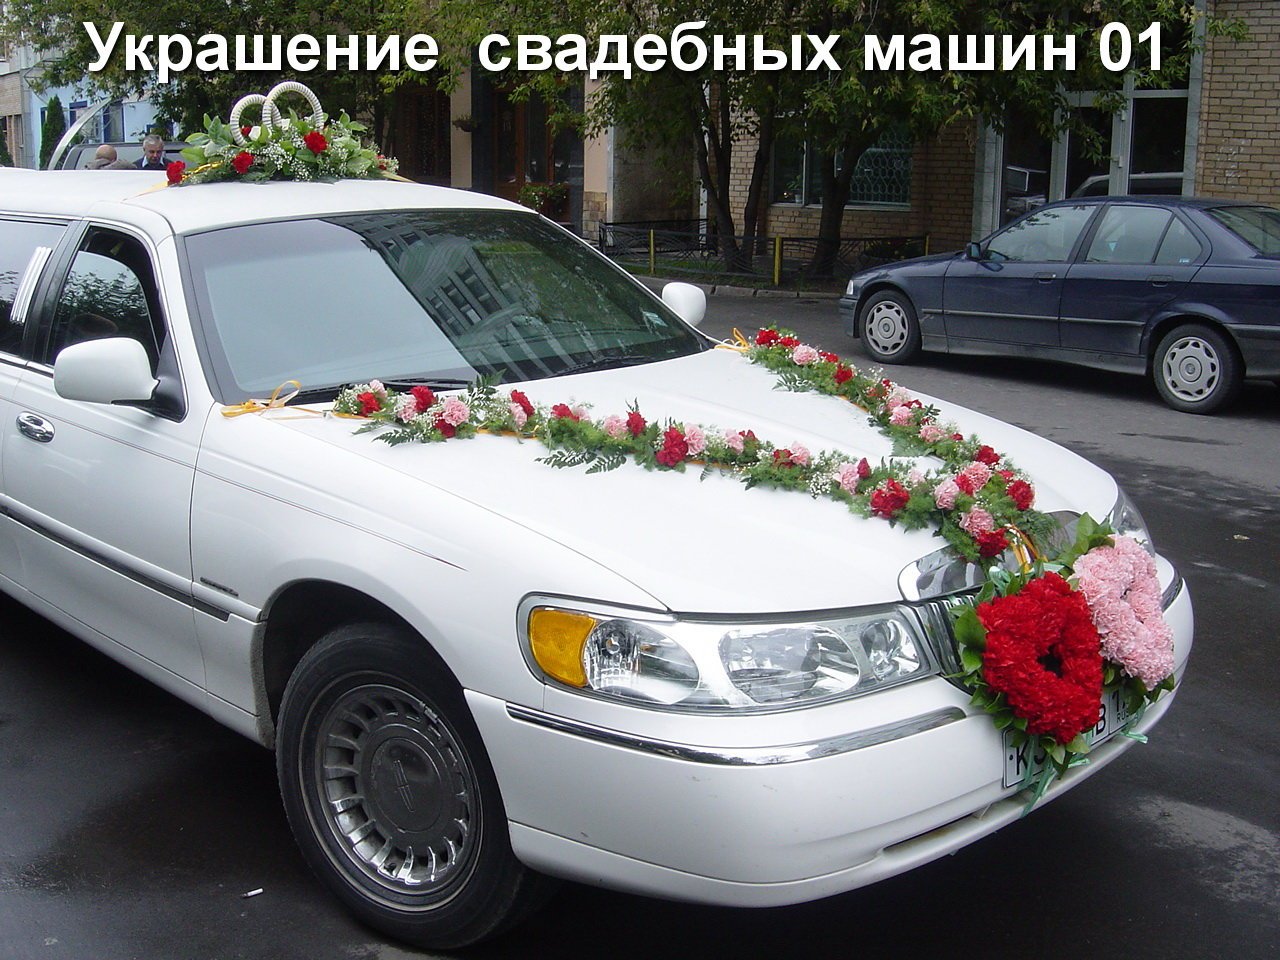 Свадьба украшения машины лиузин в Артем